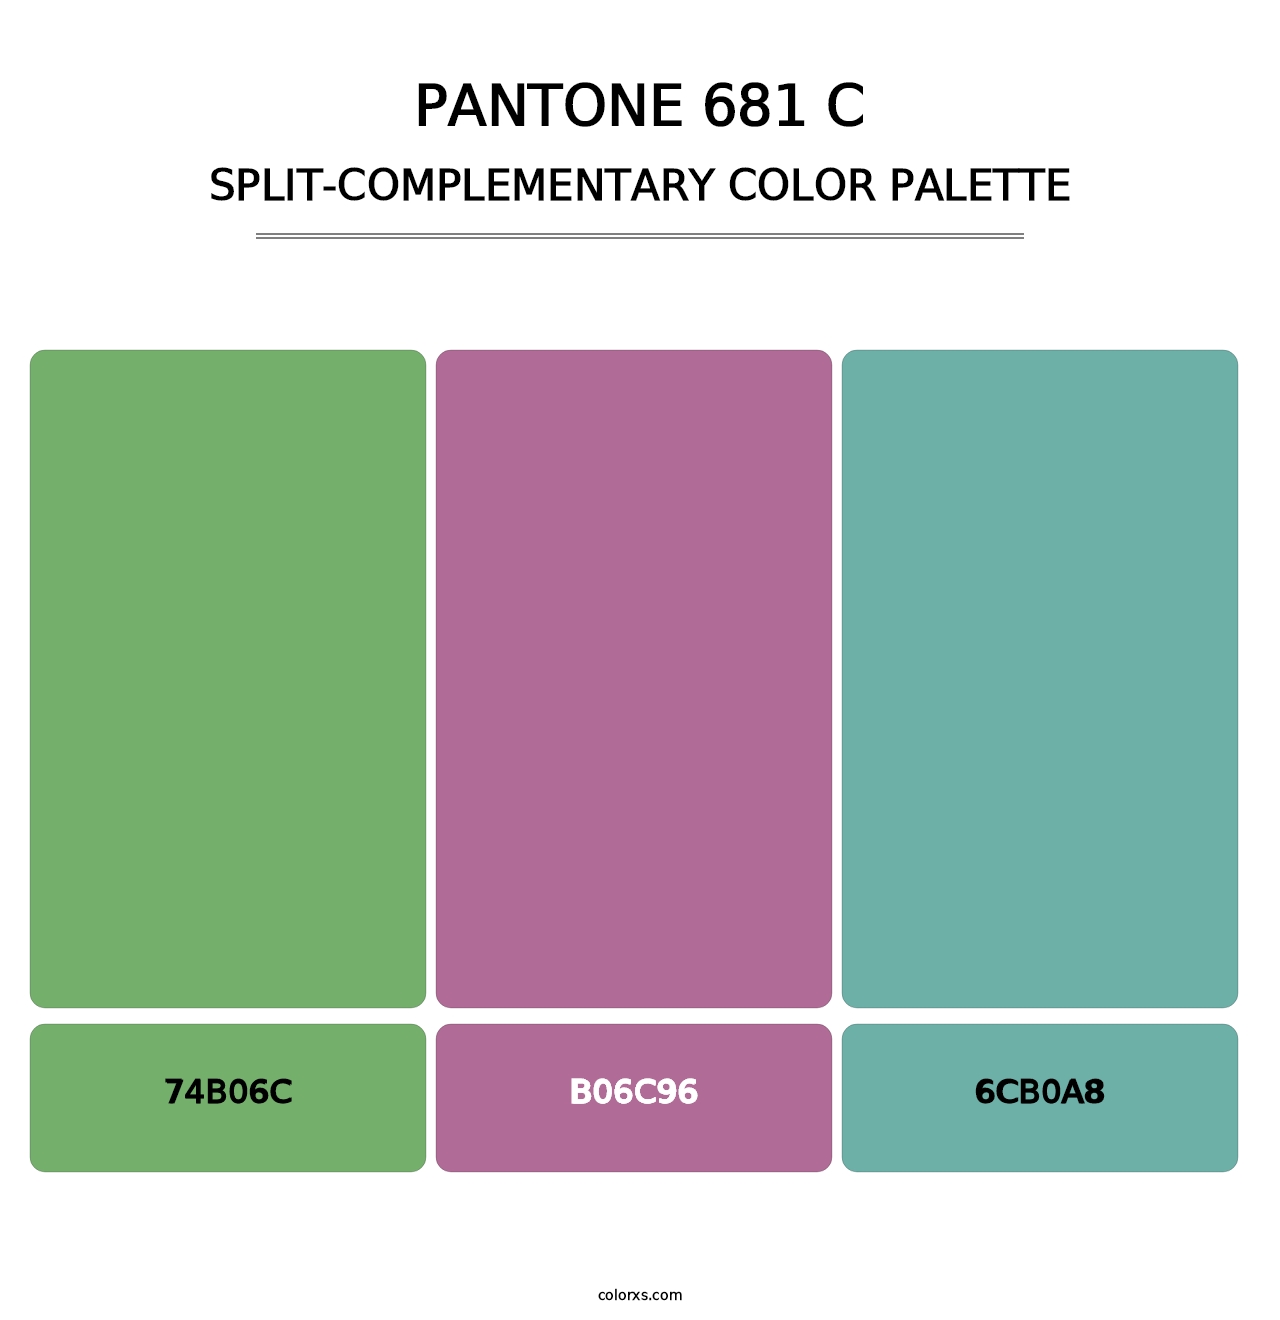 PANTONE 681 C - Split-Complementary Color Palette